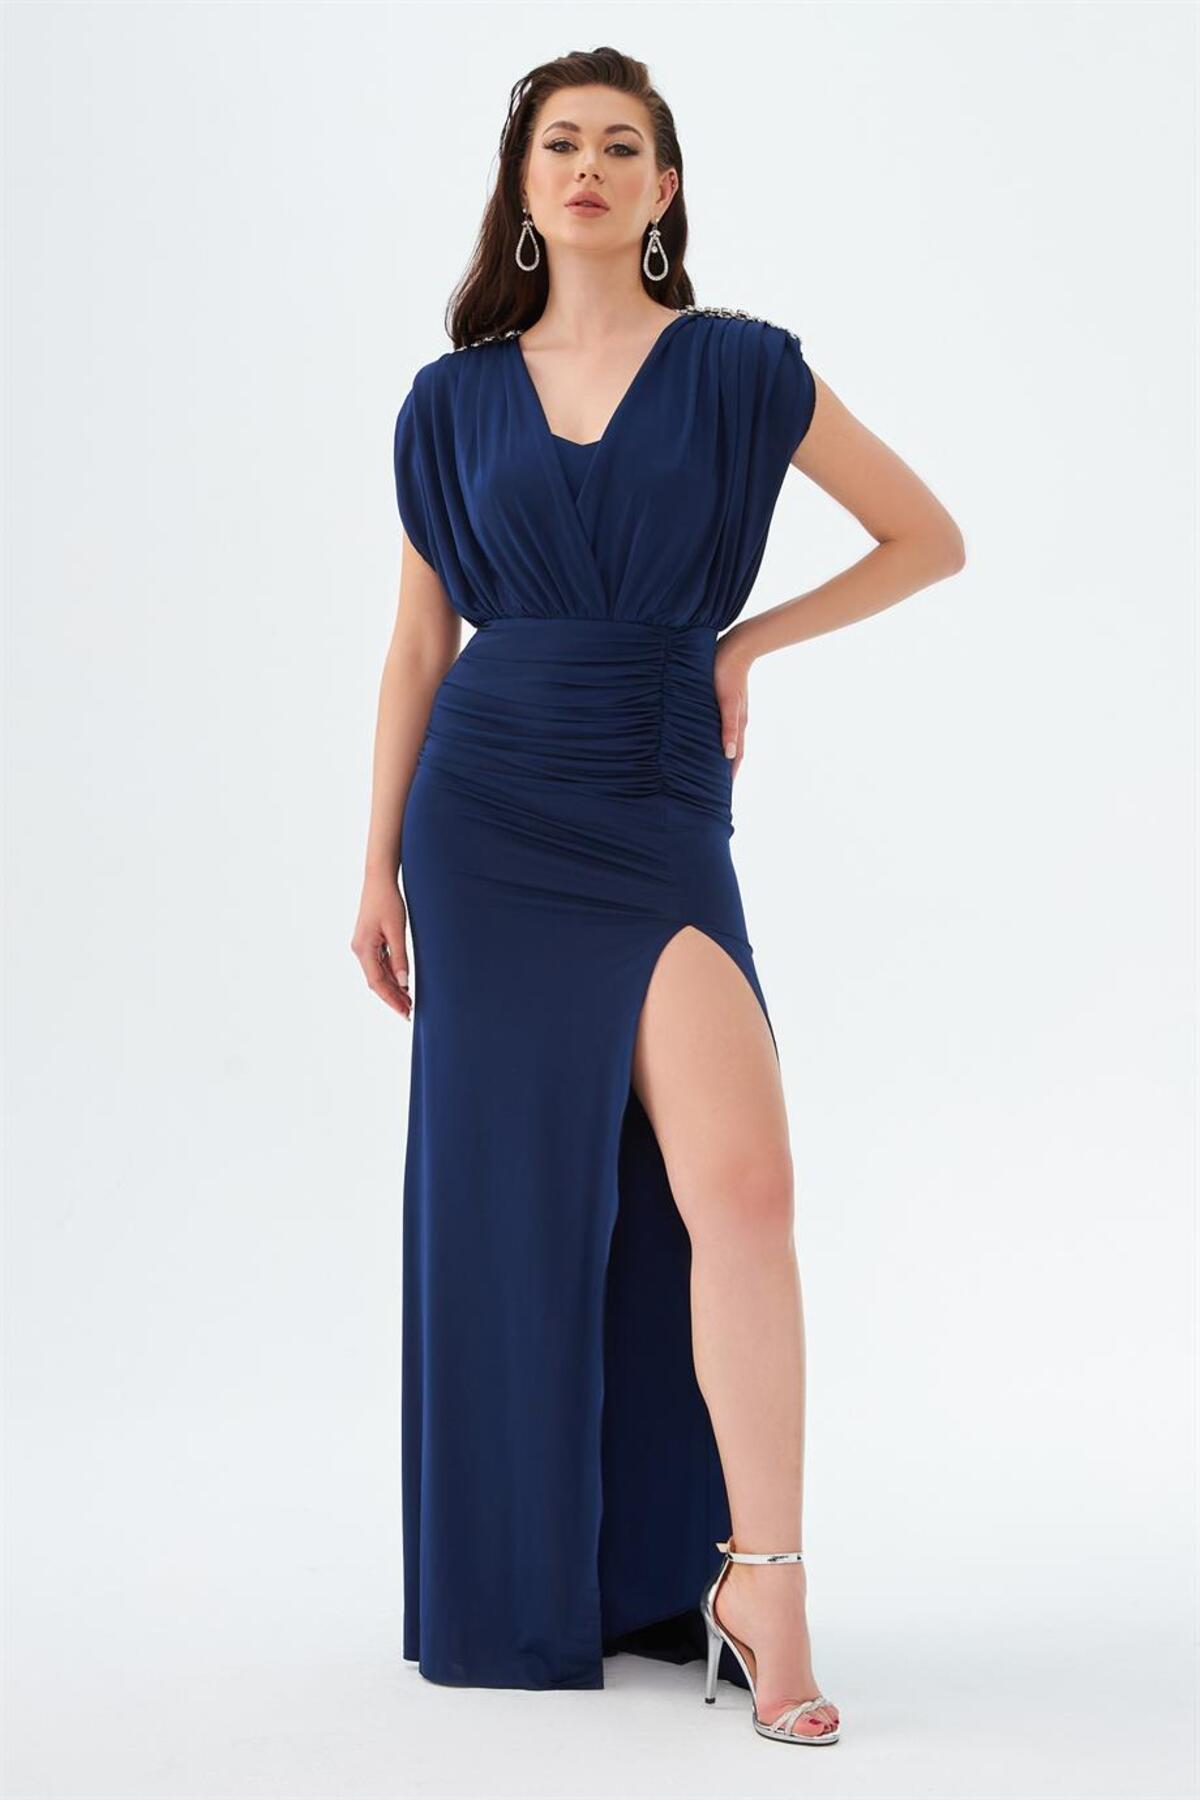 Levně Carmen Navy Blue Sandy Slit Long Evening Dress with Low-cut Back